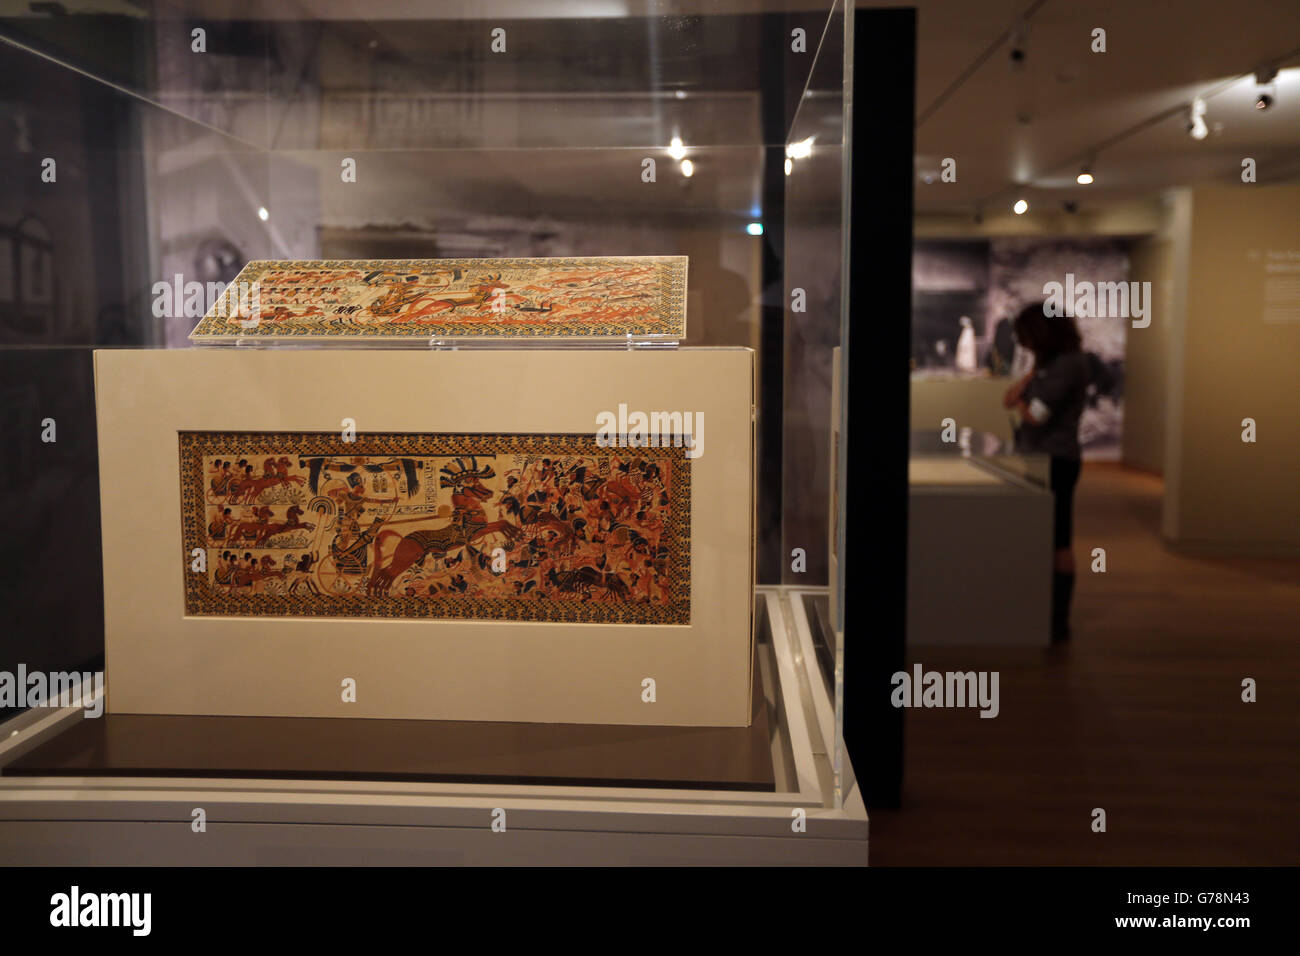 Visita le mostre presso l'Ashmolean Museum di Oxford in mostra alla mostra speciale "Discovering Tutankhamun", che dura fino al 2 novembre. Foto Stock